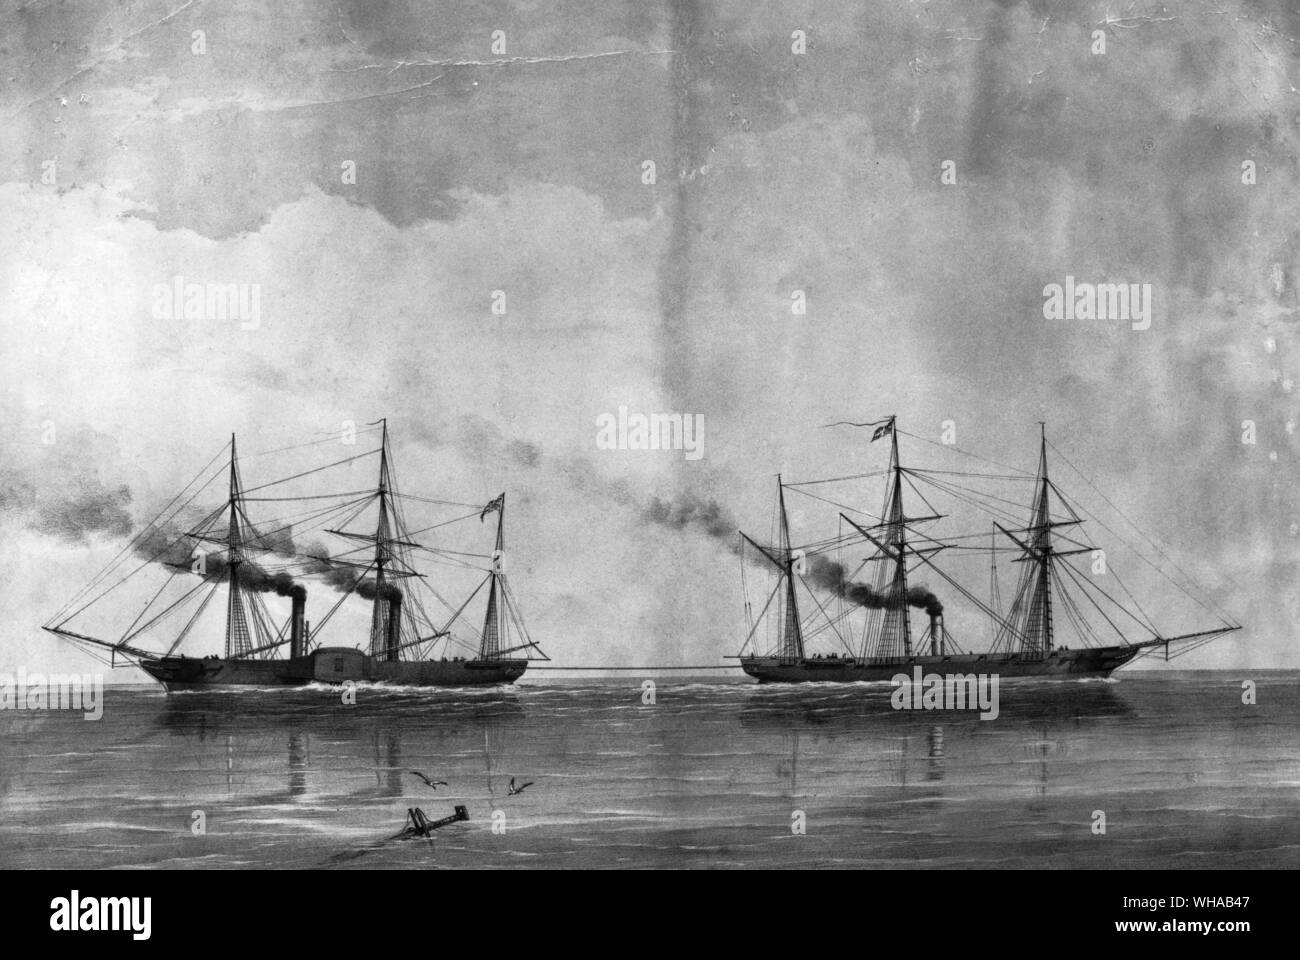 El juicio de poder entre la rueda de paletas y tornillo tuvo lugar en el canal de la Mancha el 20 de junio de 1849 y duró una hora, durante el cual el Níger remolcaron el Basilisco Foto de stock